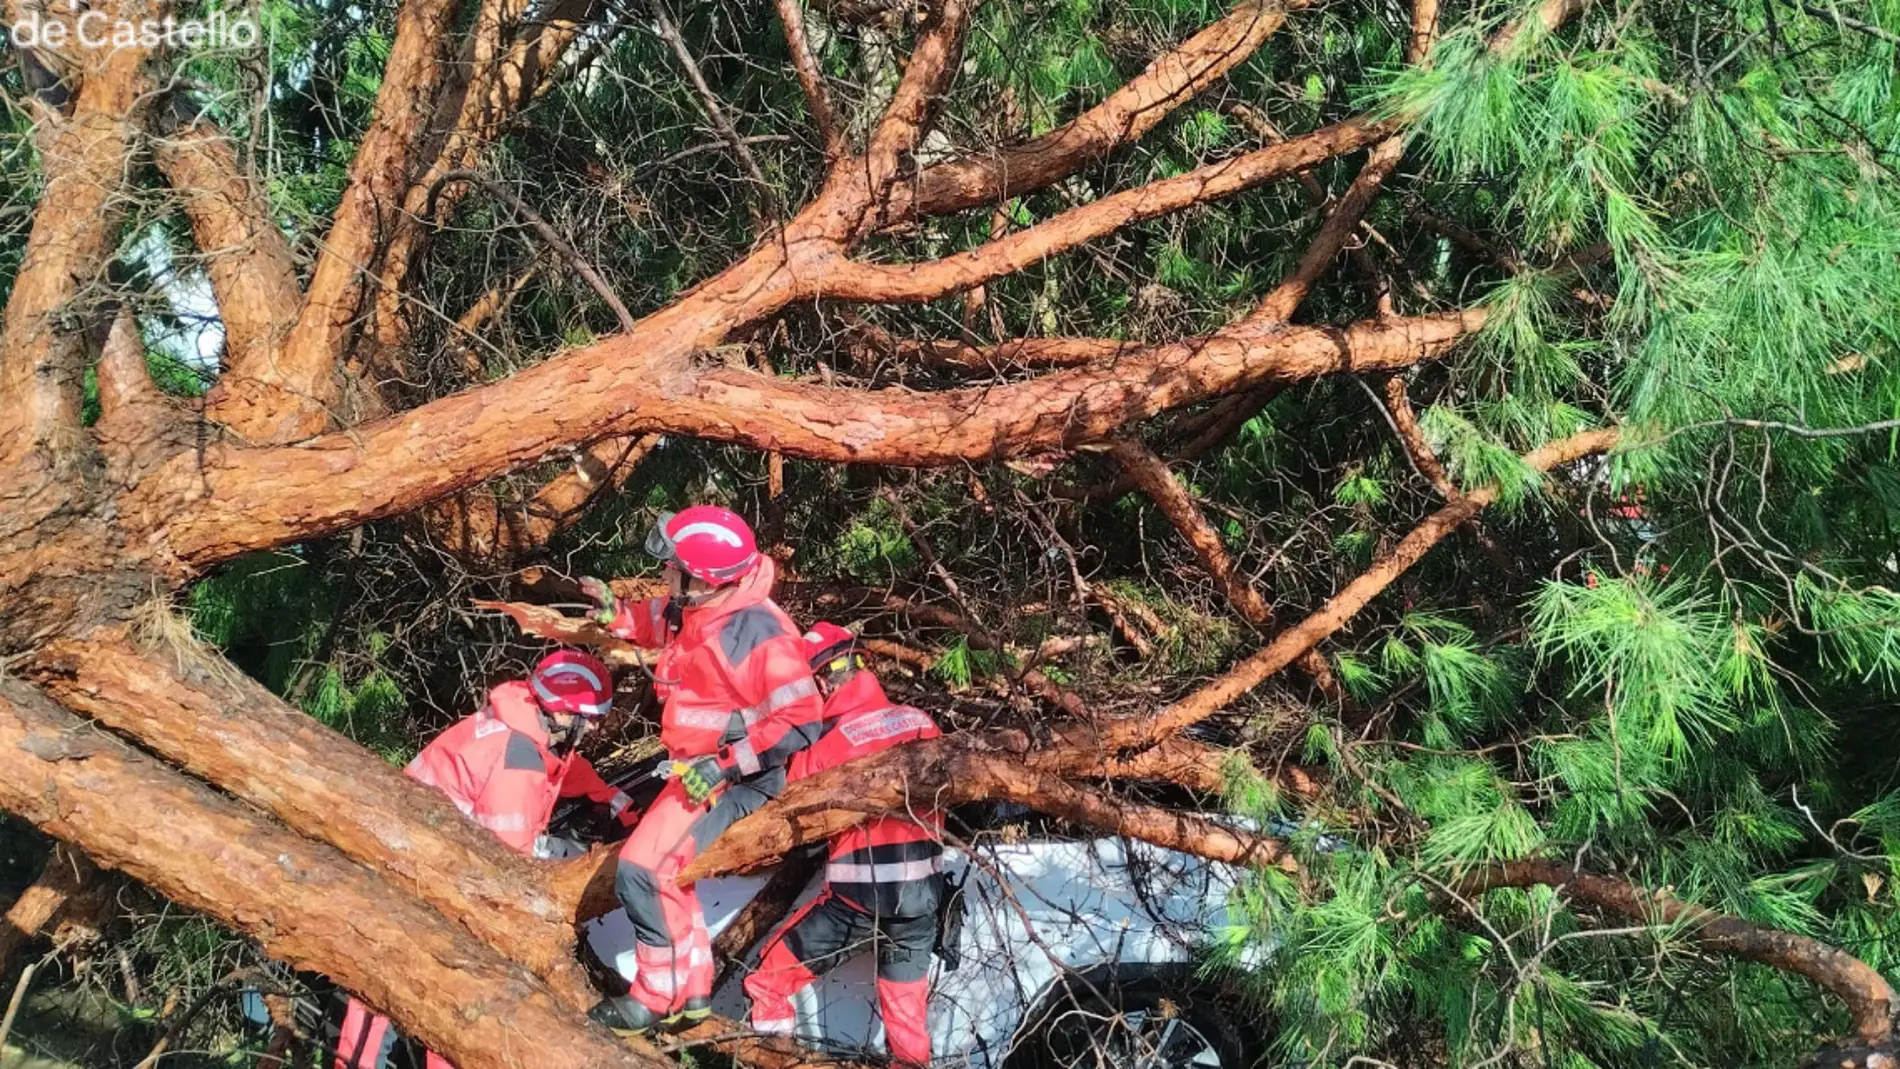 El temporal azota Borriana: coches en cunetas, árboles caídos y clases suspendidas